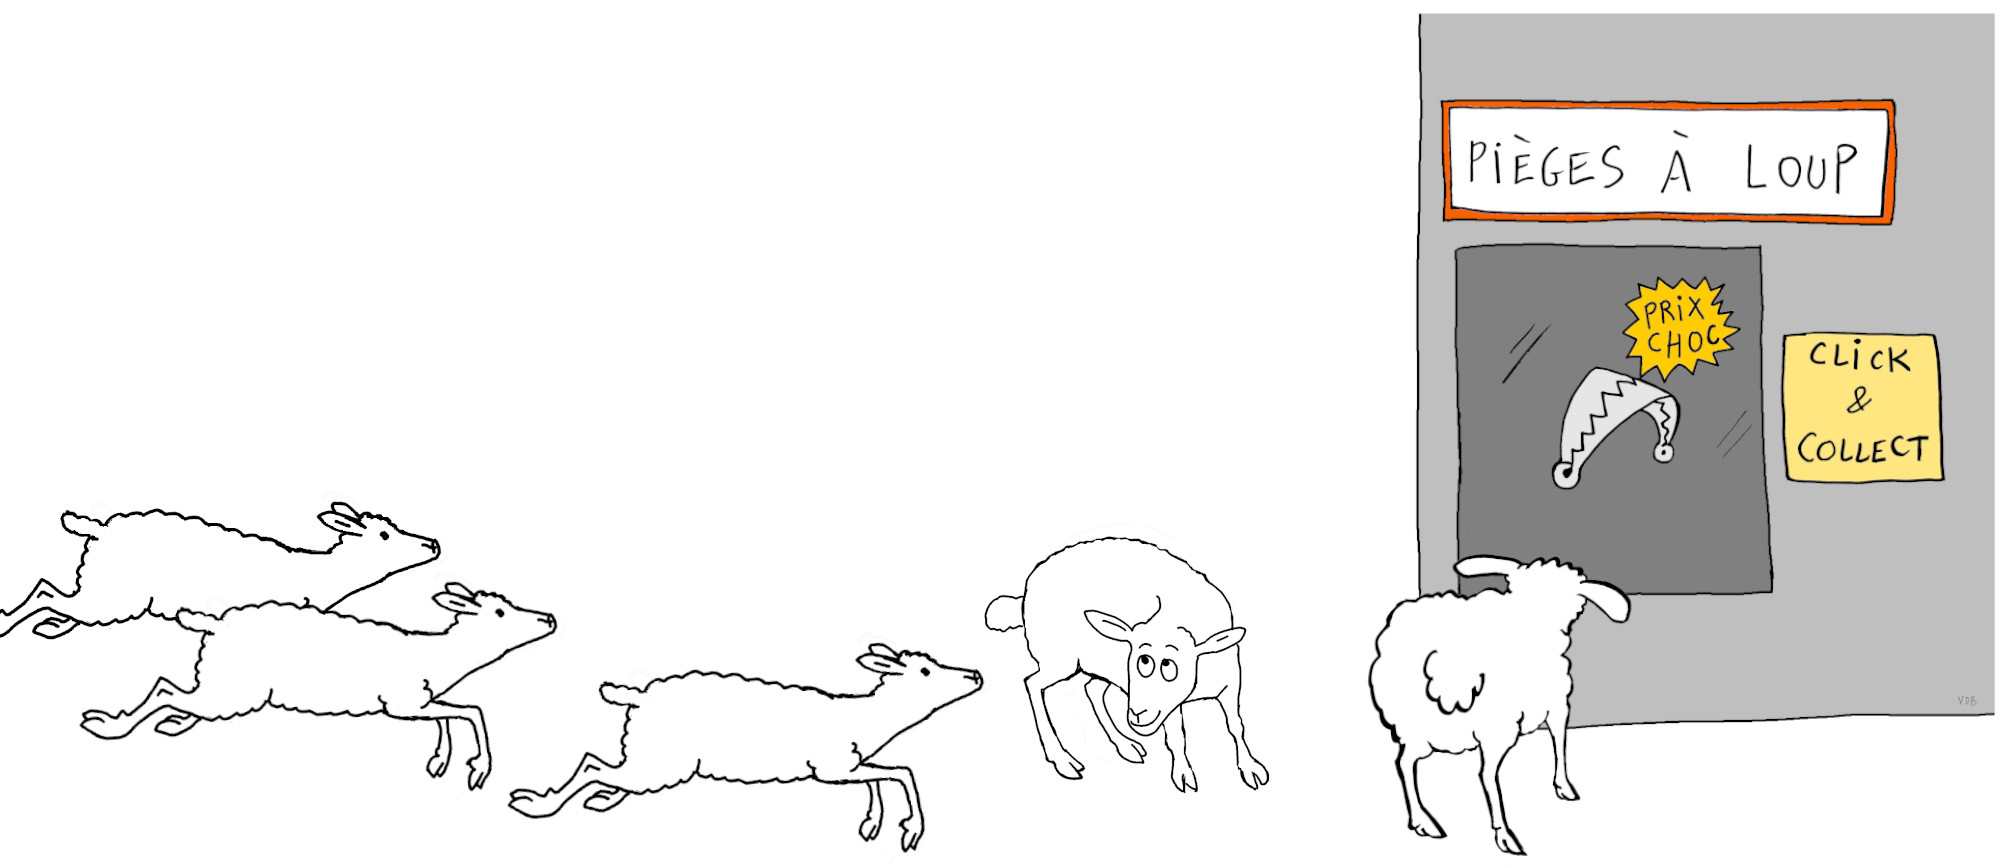 Mouton devant un magasin de pièges à loup